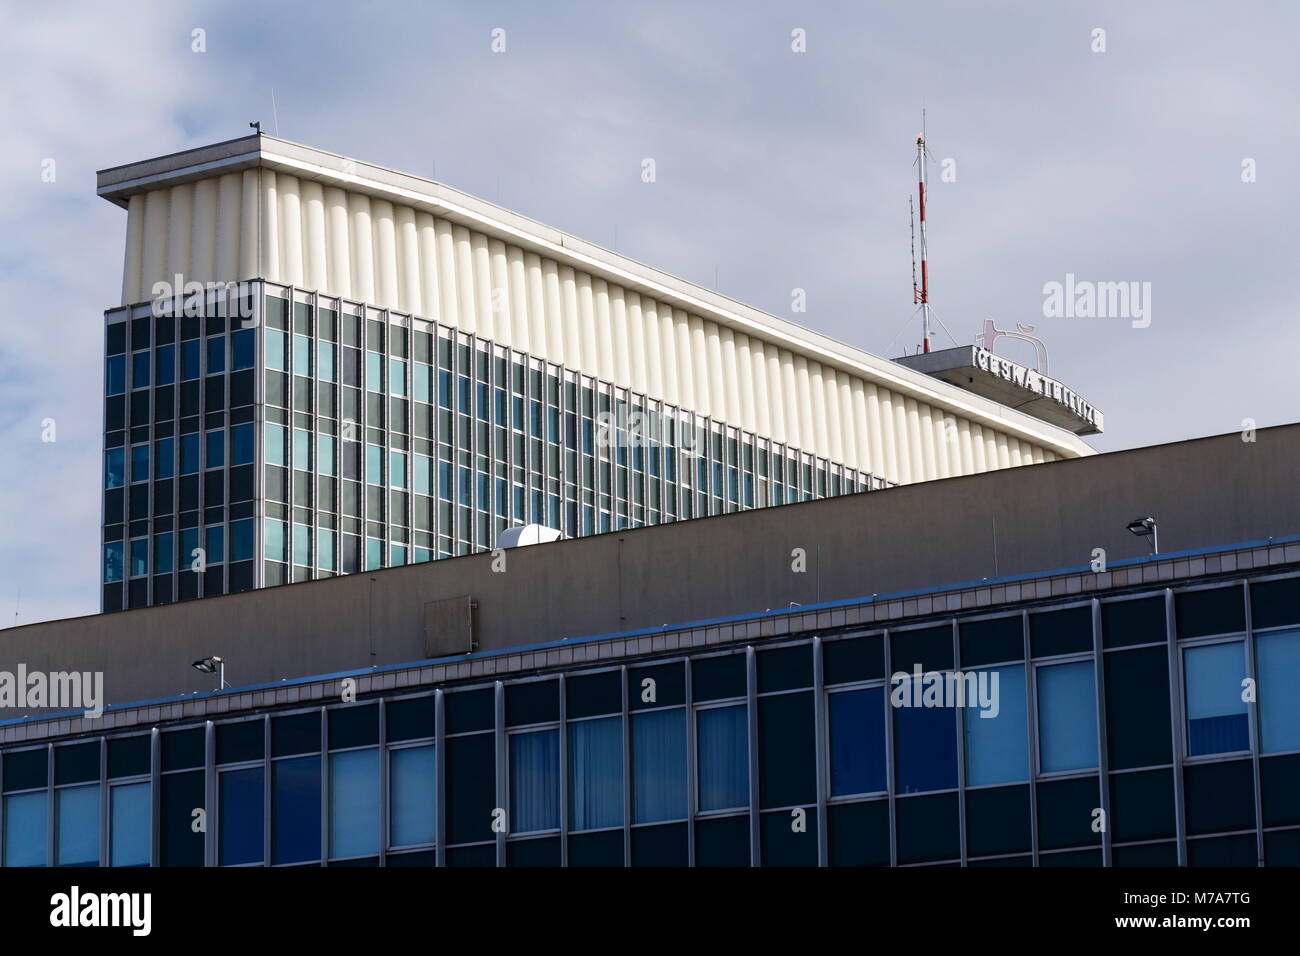 PRAGUE, RÉPUBLIQUE TCHÈQUE - 9 mars 2018 : Ceska televize télévision publique logo de l'entreprise sur le bâtiment de l'ONU le 9 mars 2018 Banque D'Images